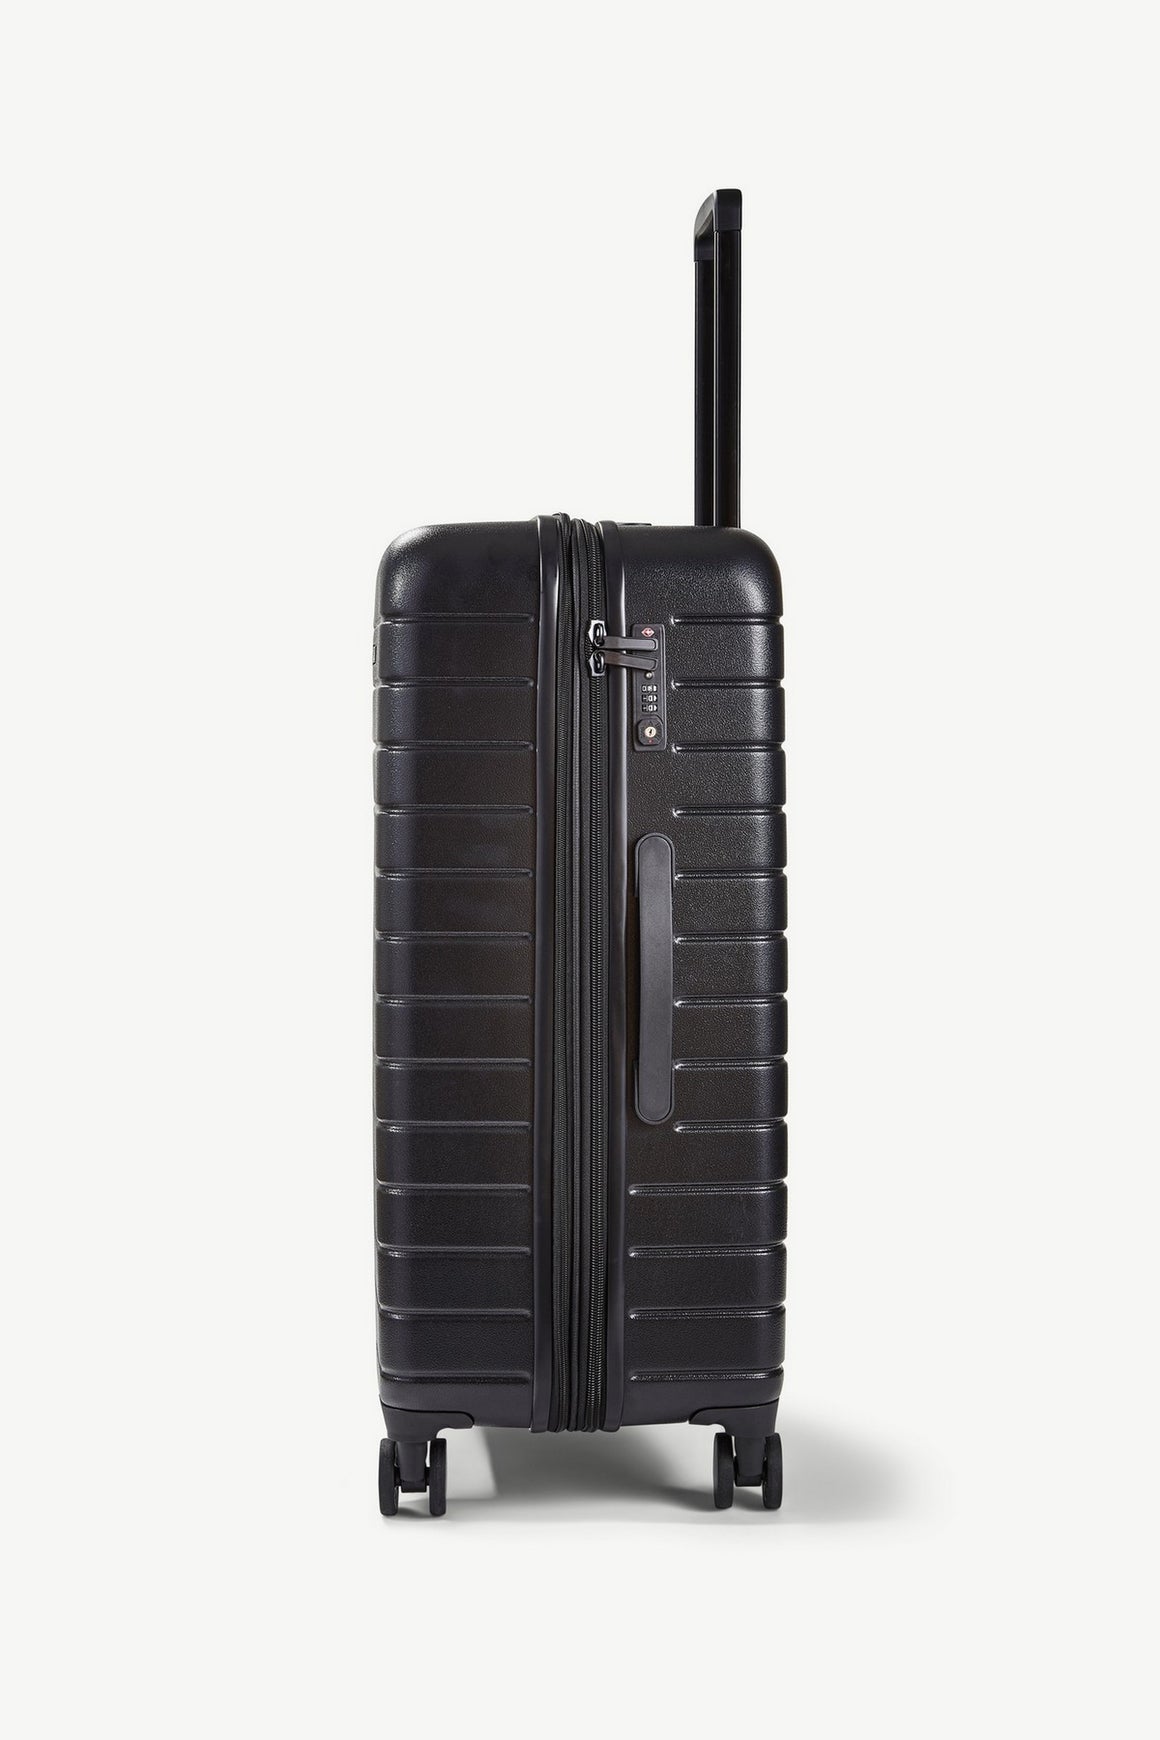 Novo Set of 3 Suitcases